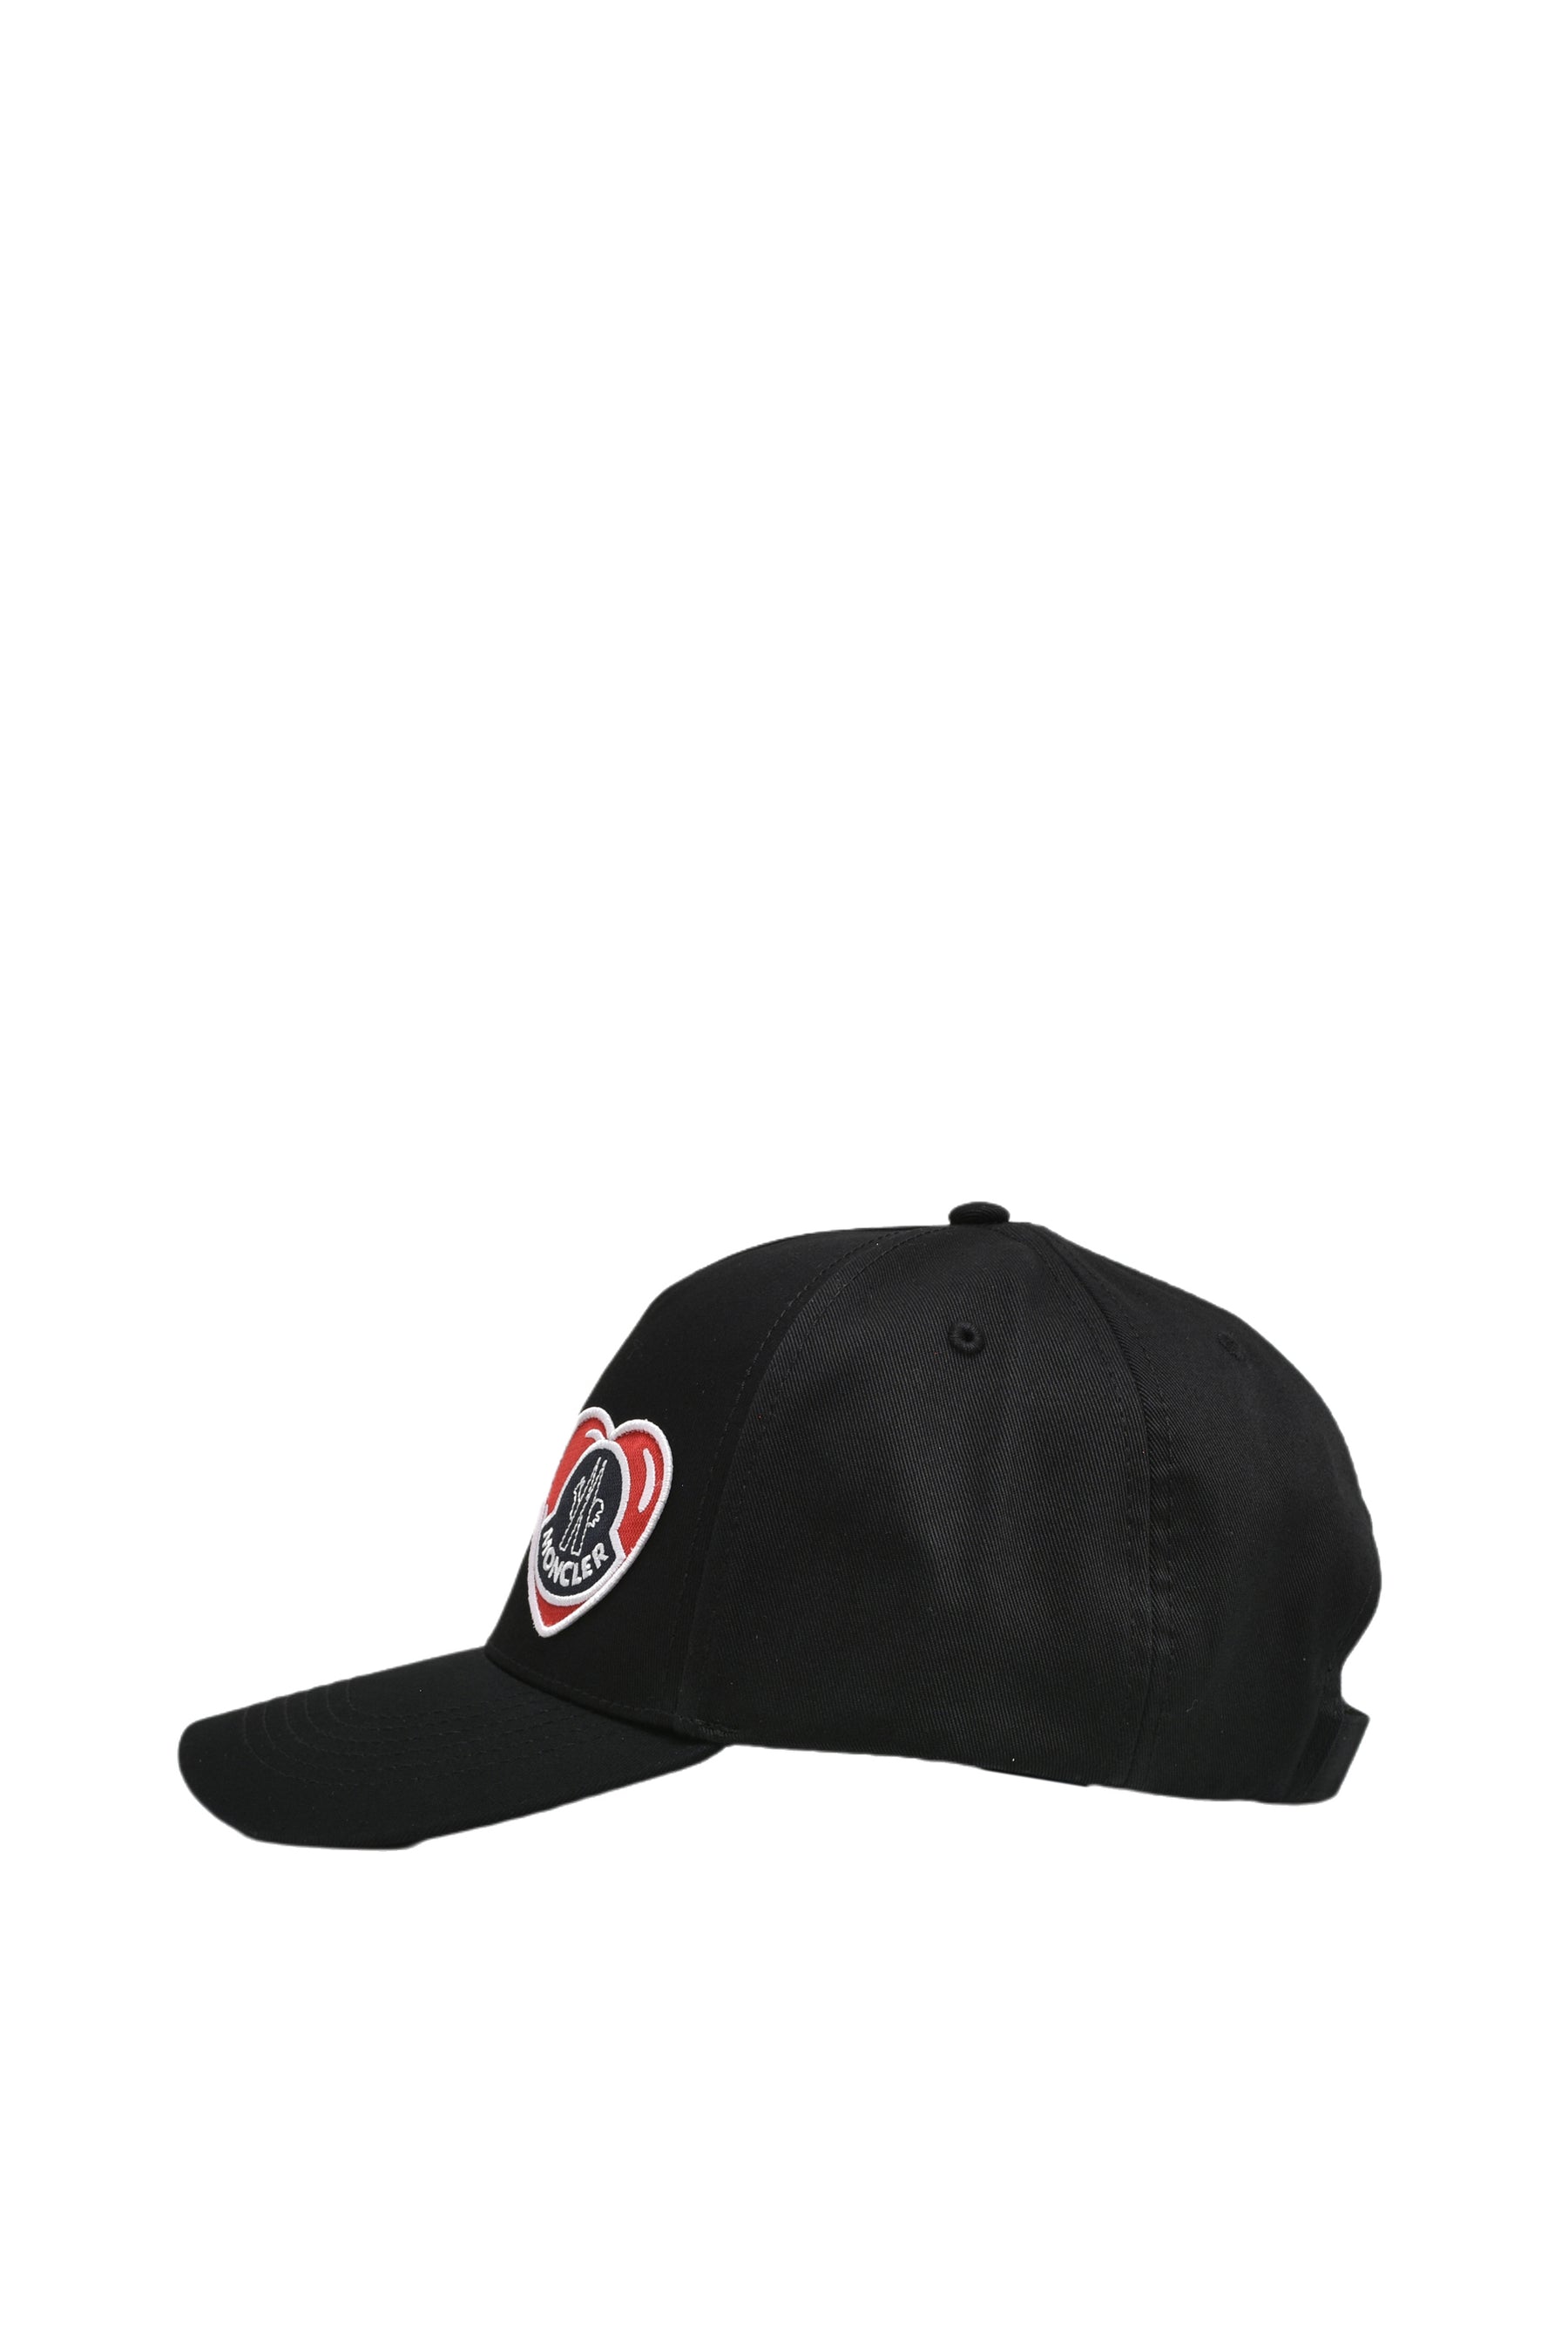 BASEBALL CAP/BLK (999)